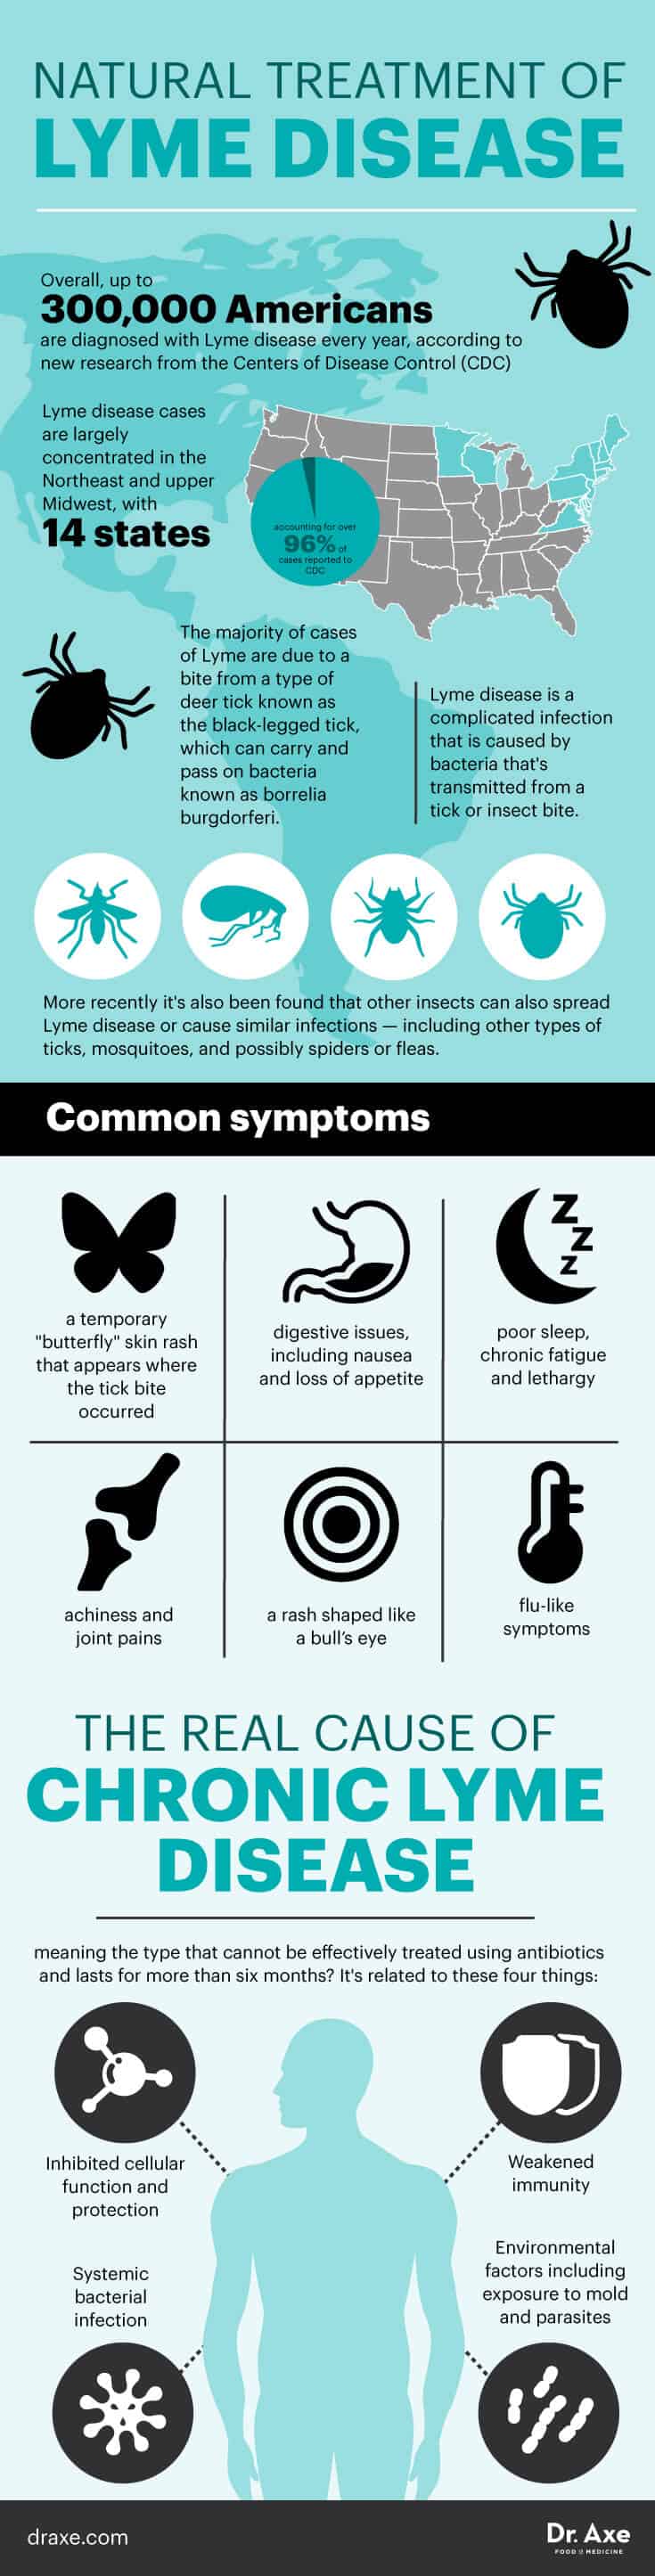 Lyme disease symptoms - Dr. Axe